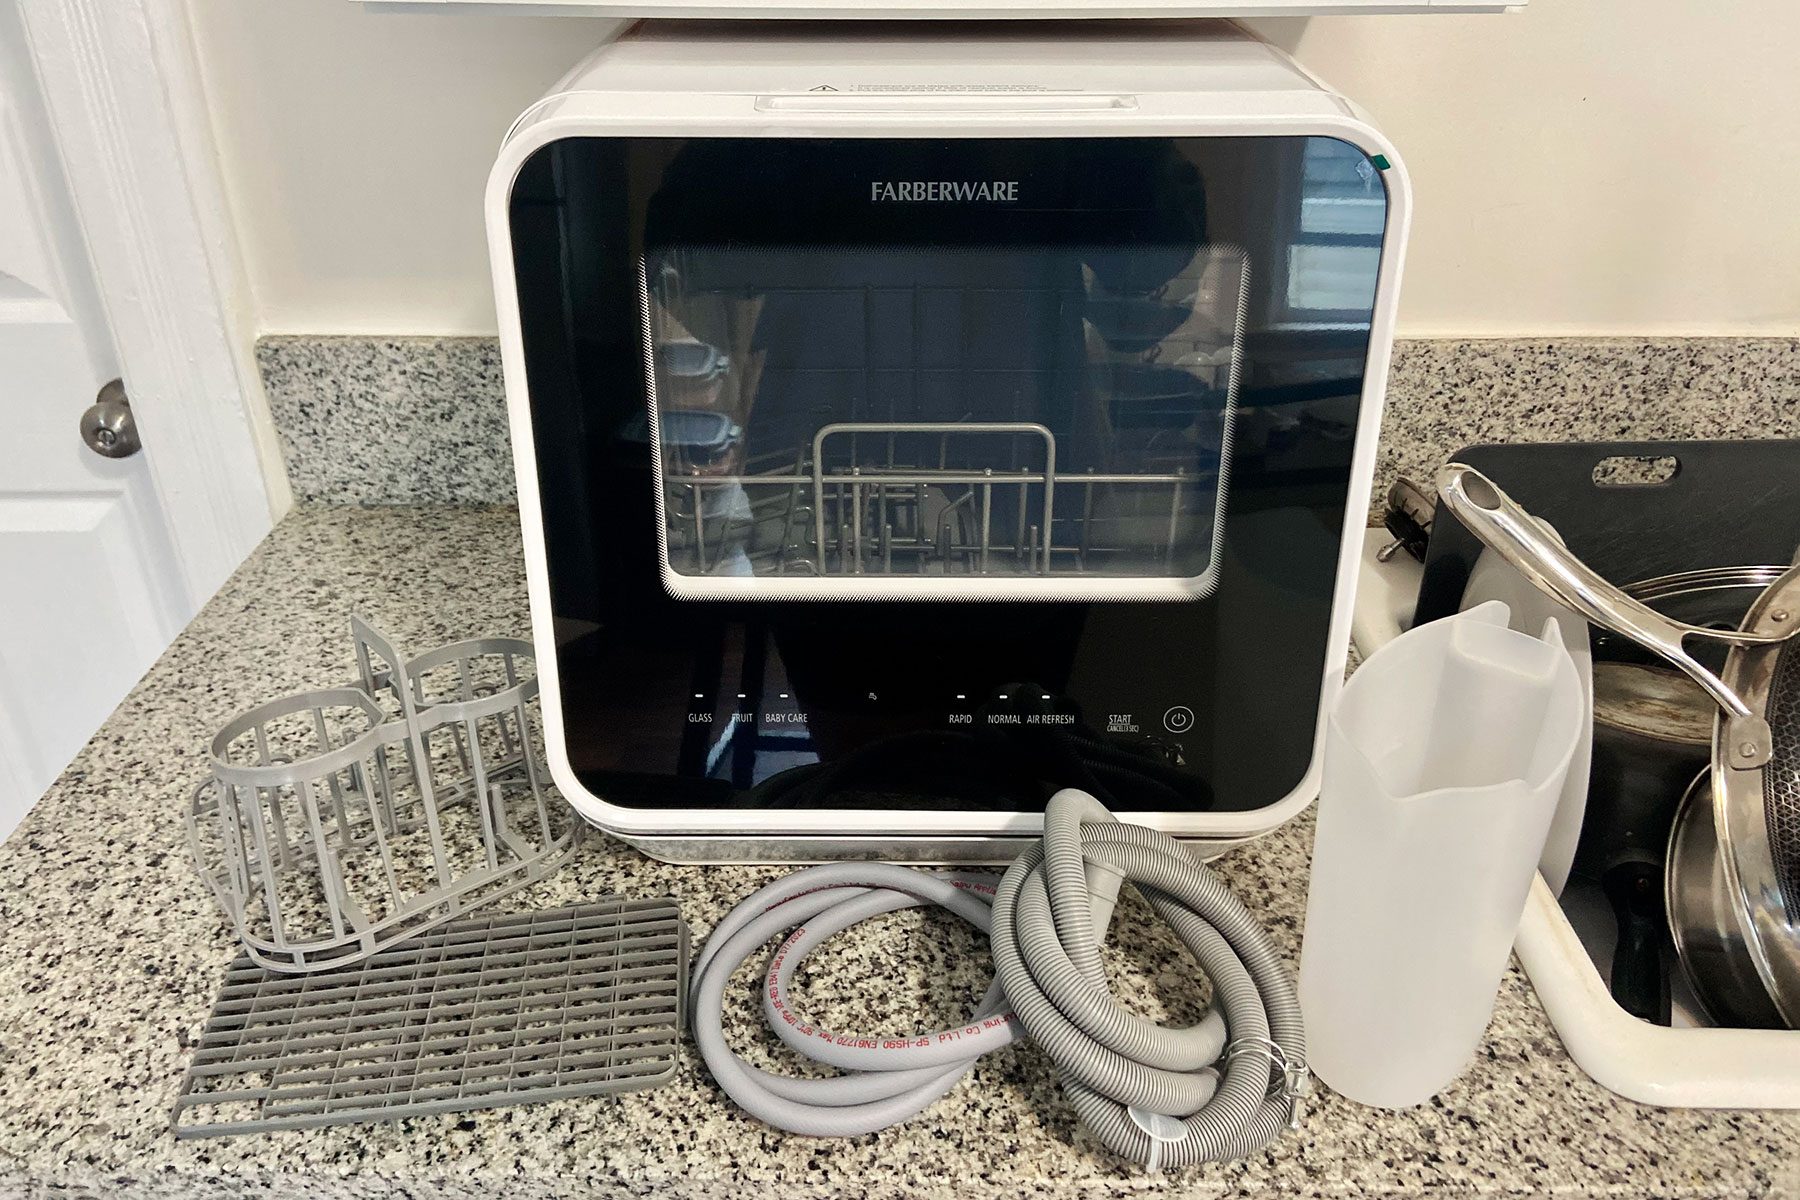 Farberware Portable Countertop Dishwasher Review 2020